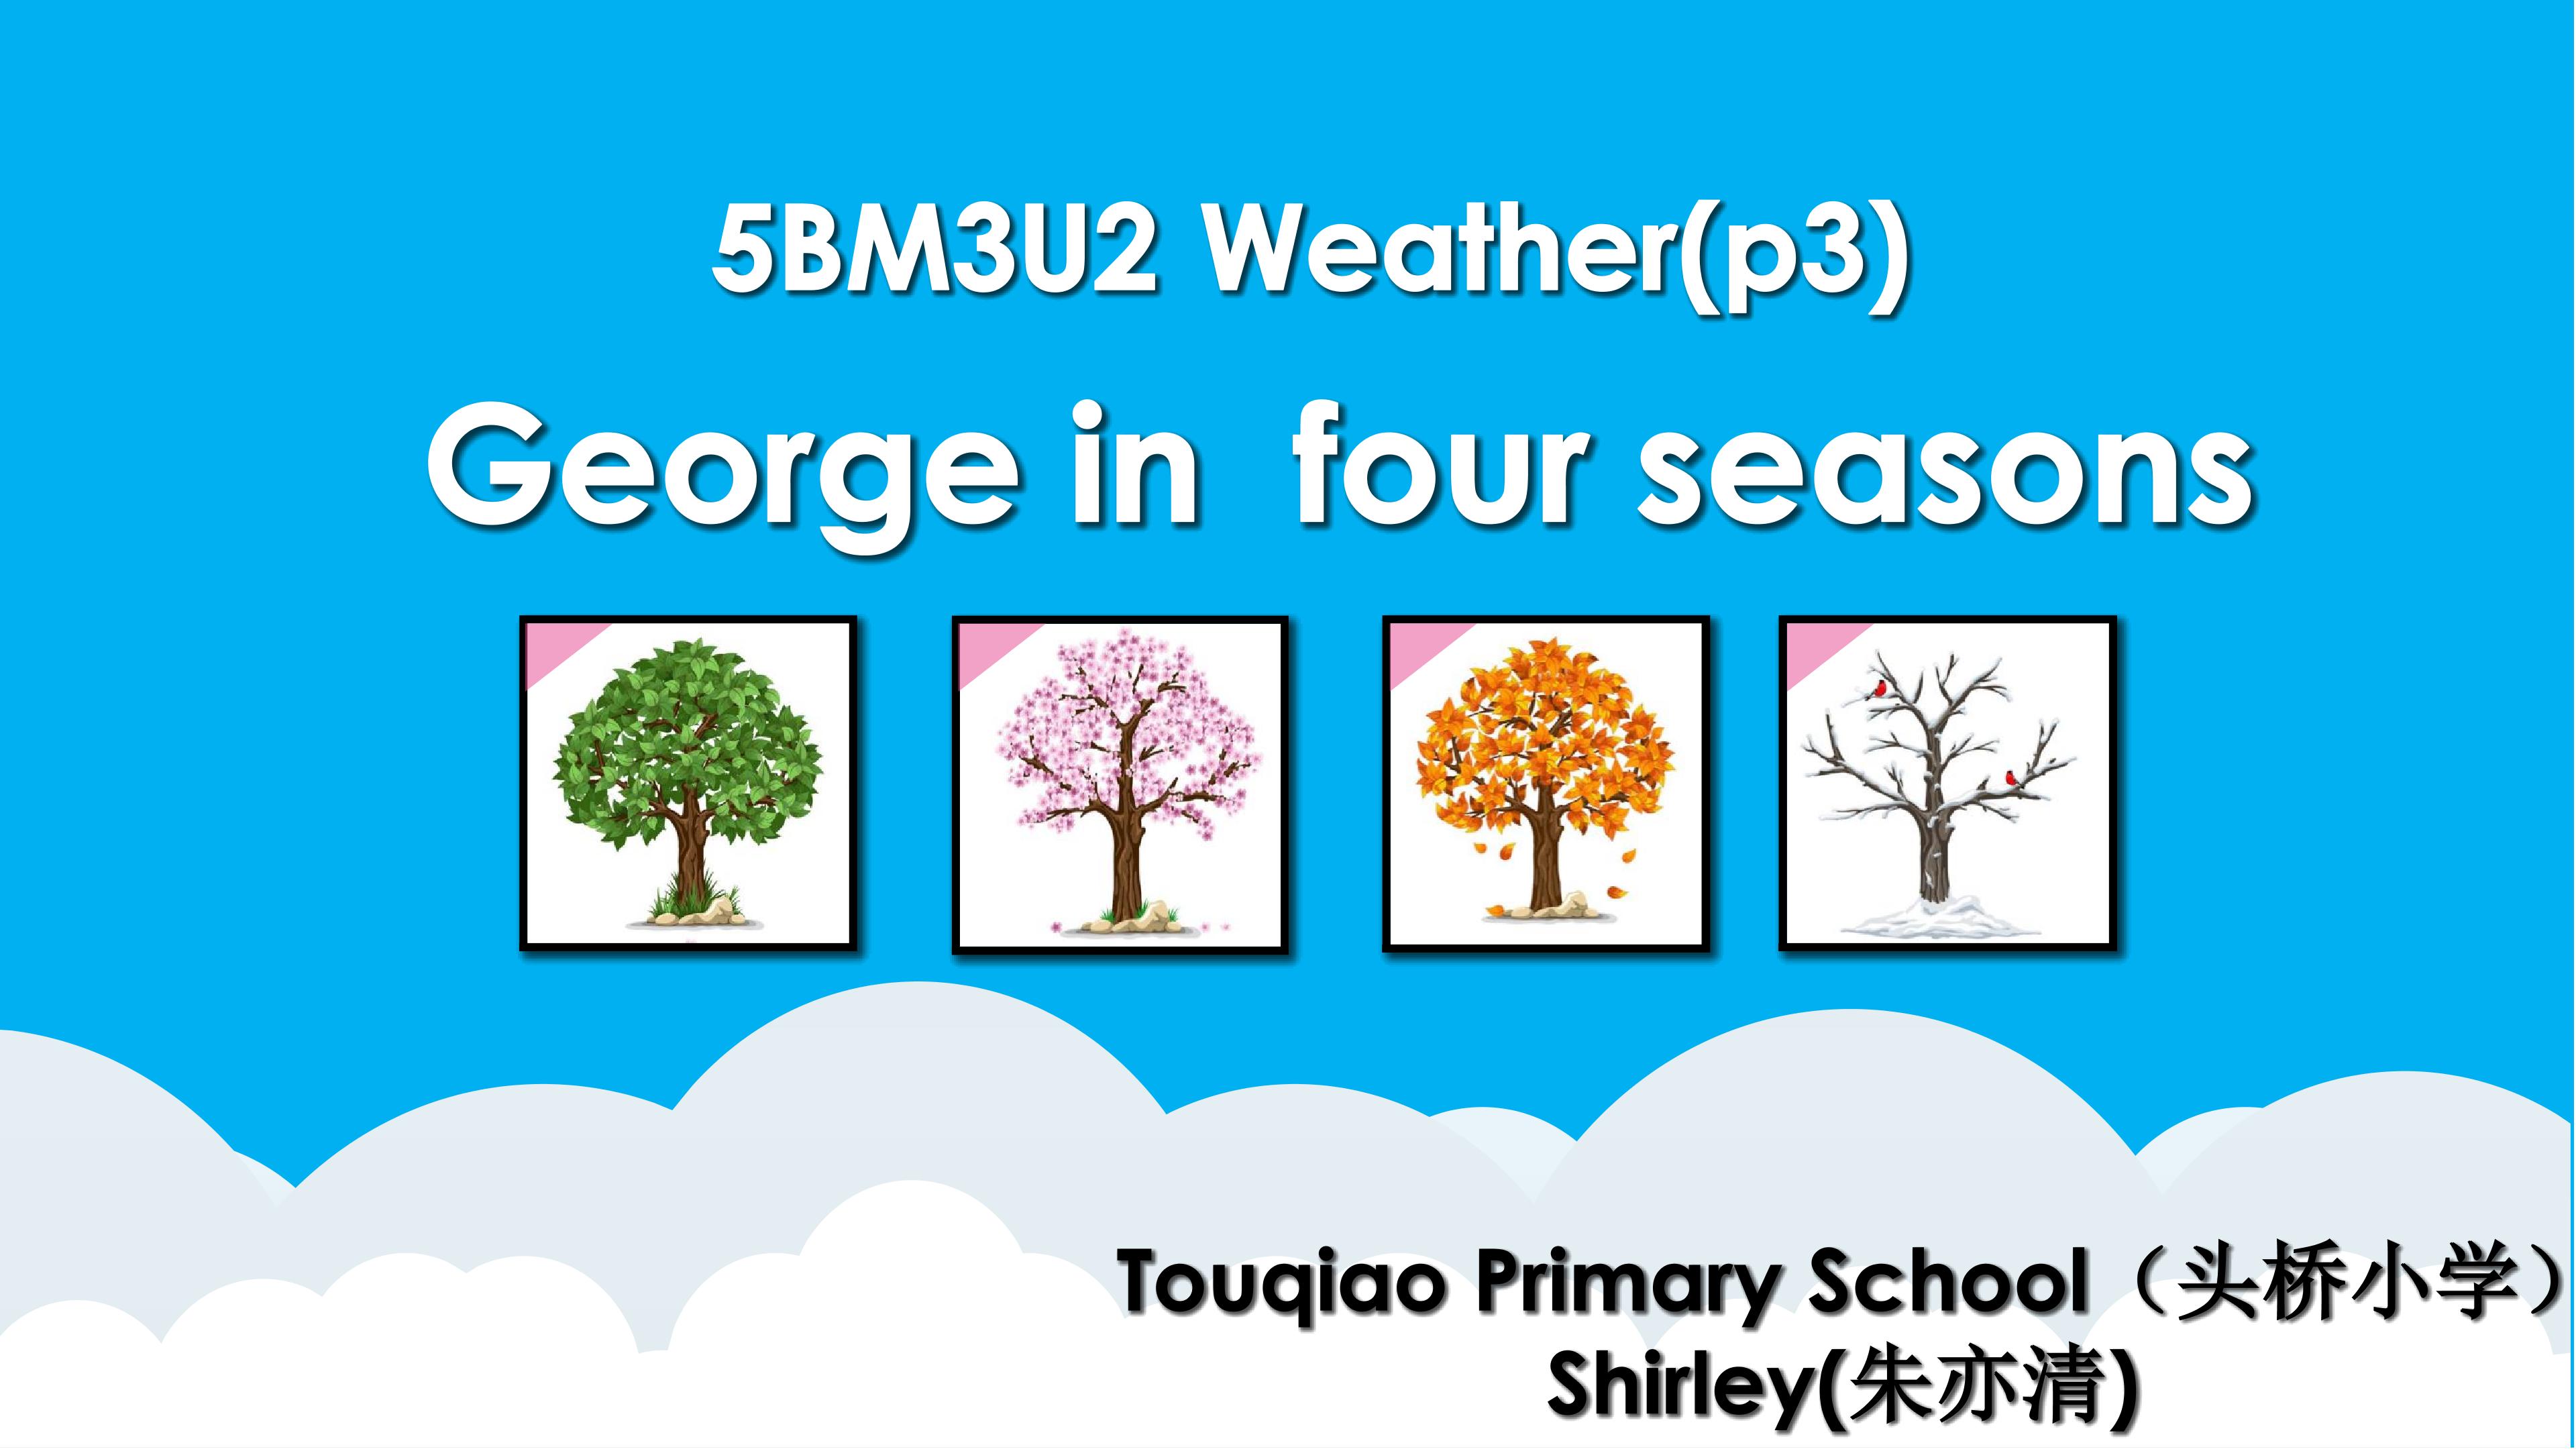 George in four seasons